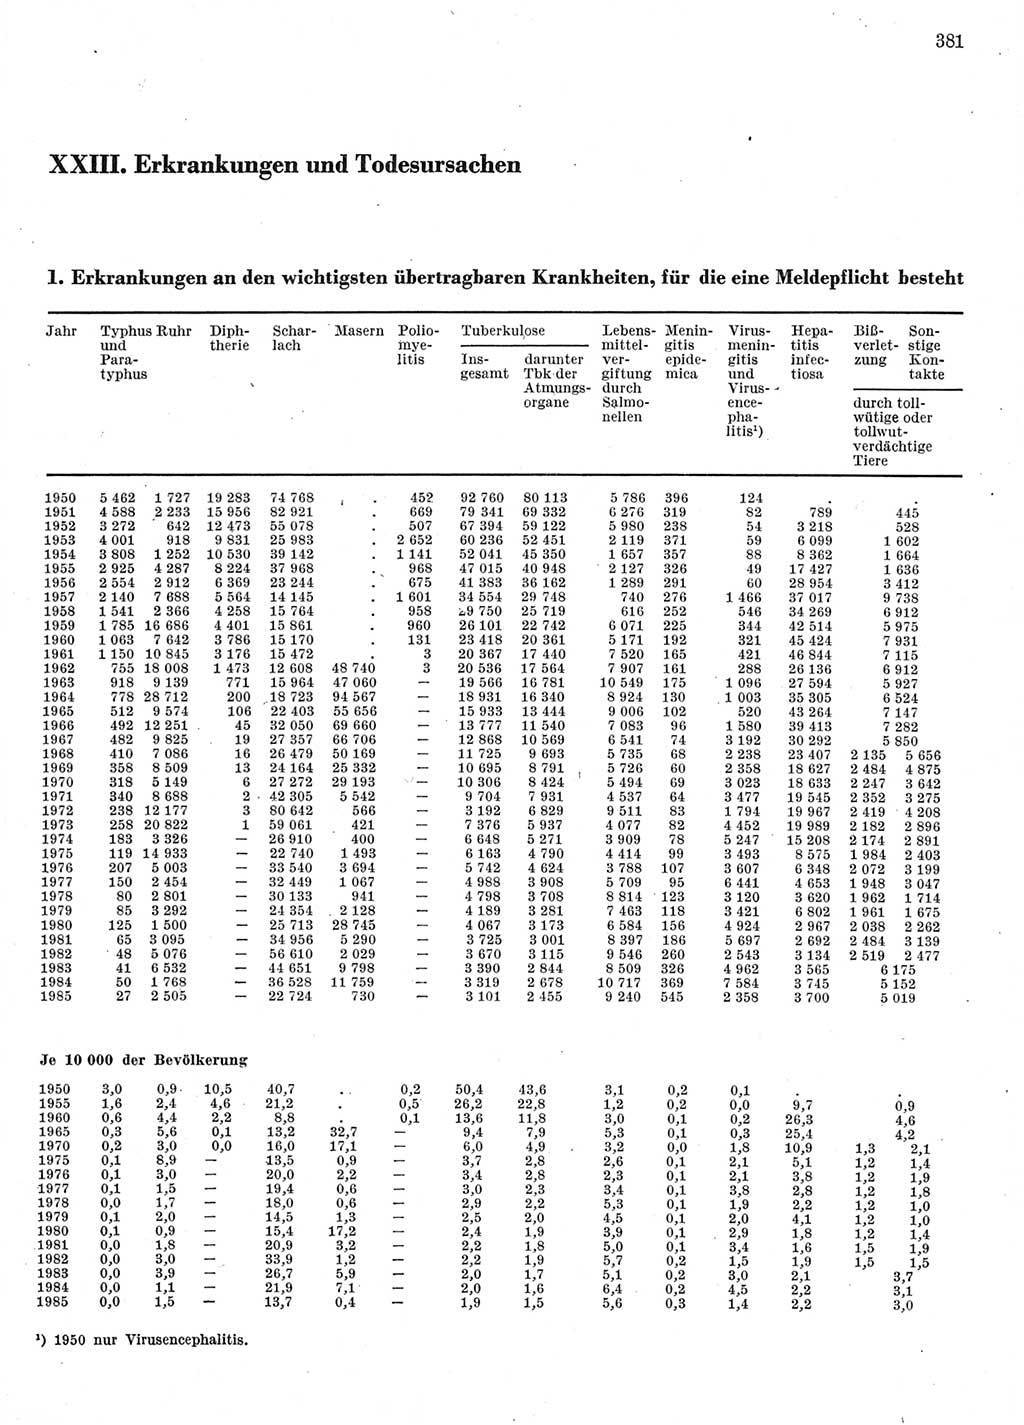 Statistisches Jahrbuch der Deutschen Demokratischen Republik (DDR) 1986, Seite 381 (Stat. Jb. DDR 1986, S. 381)